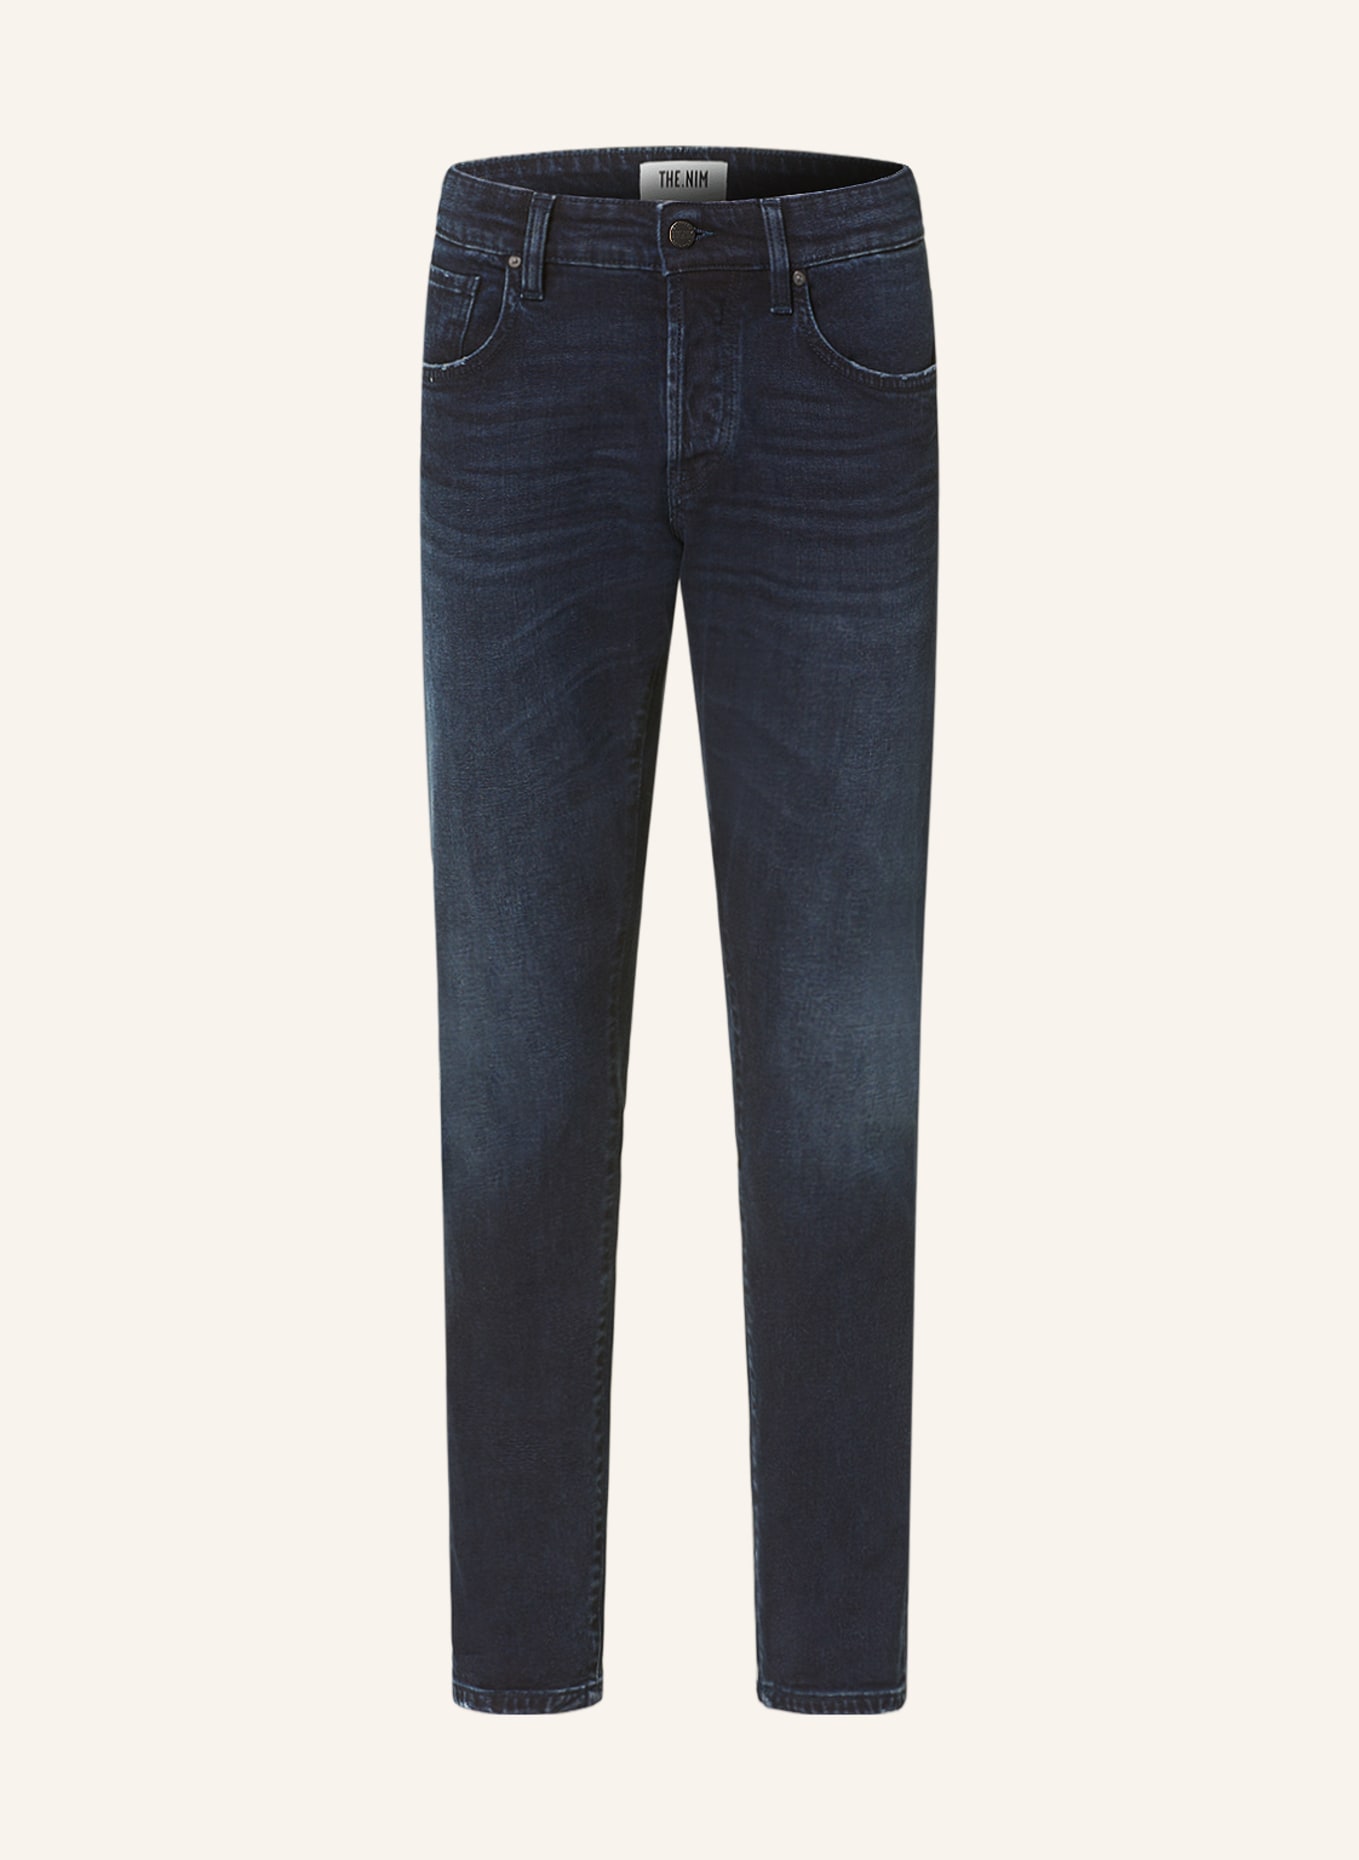 THE.NIM STANDARD Jeans DYLAN slim fit, Color: W752-BBL BLUE BLACK (Image 1)